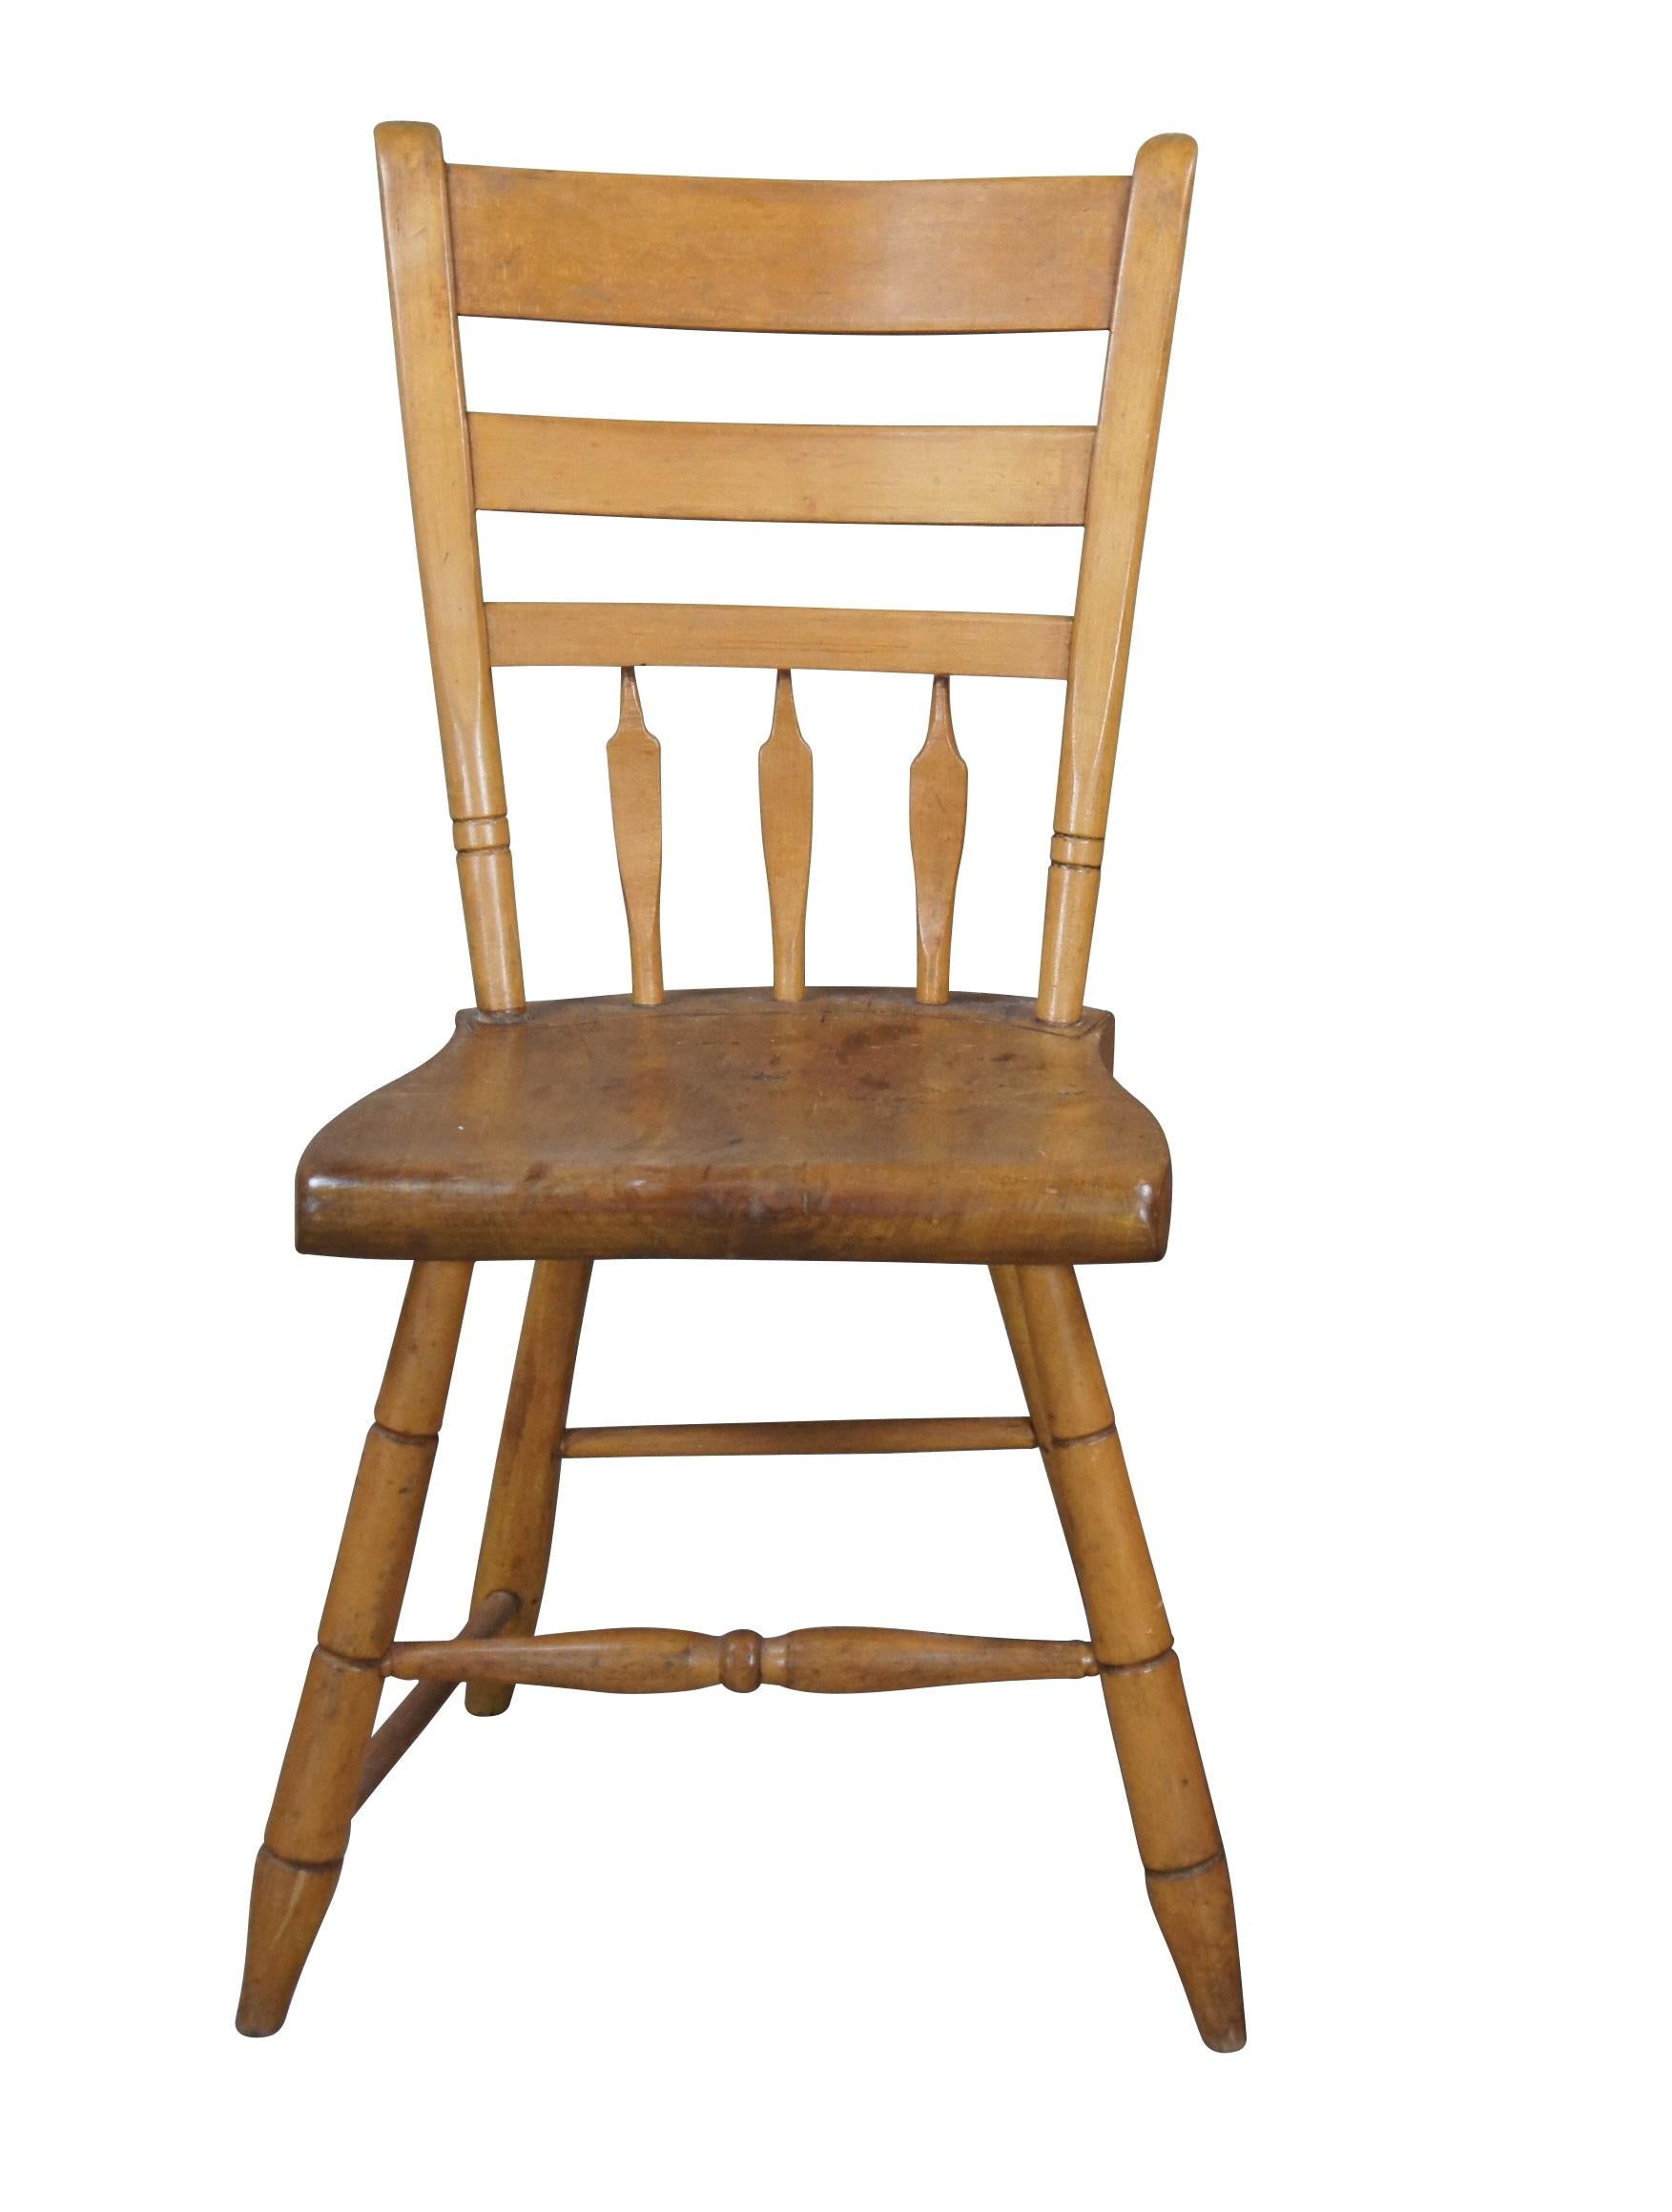  Chaise de salle à manger Windsor du 19e siècle.  Fabriqué en érable avec des éclisses en forme de flèche, une assise en planche et des pieds tournés.

Dimensions :
16